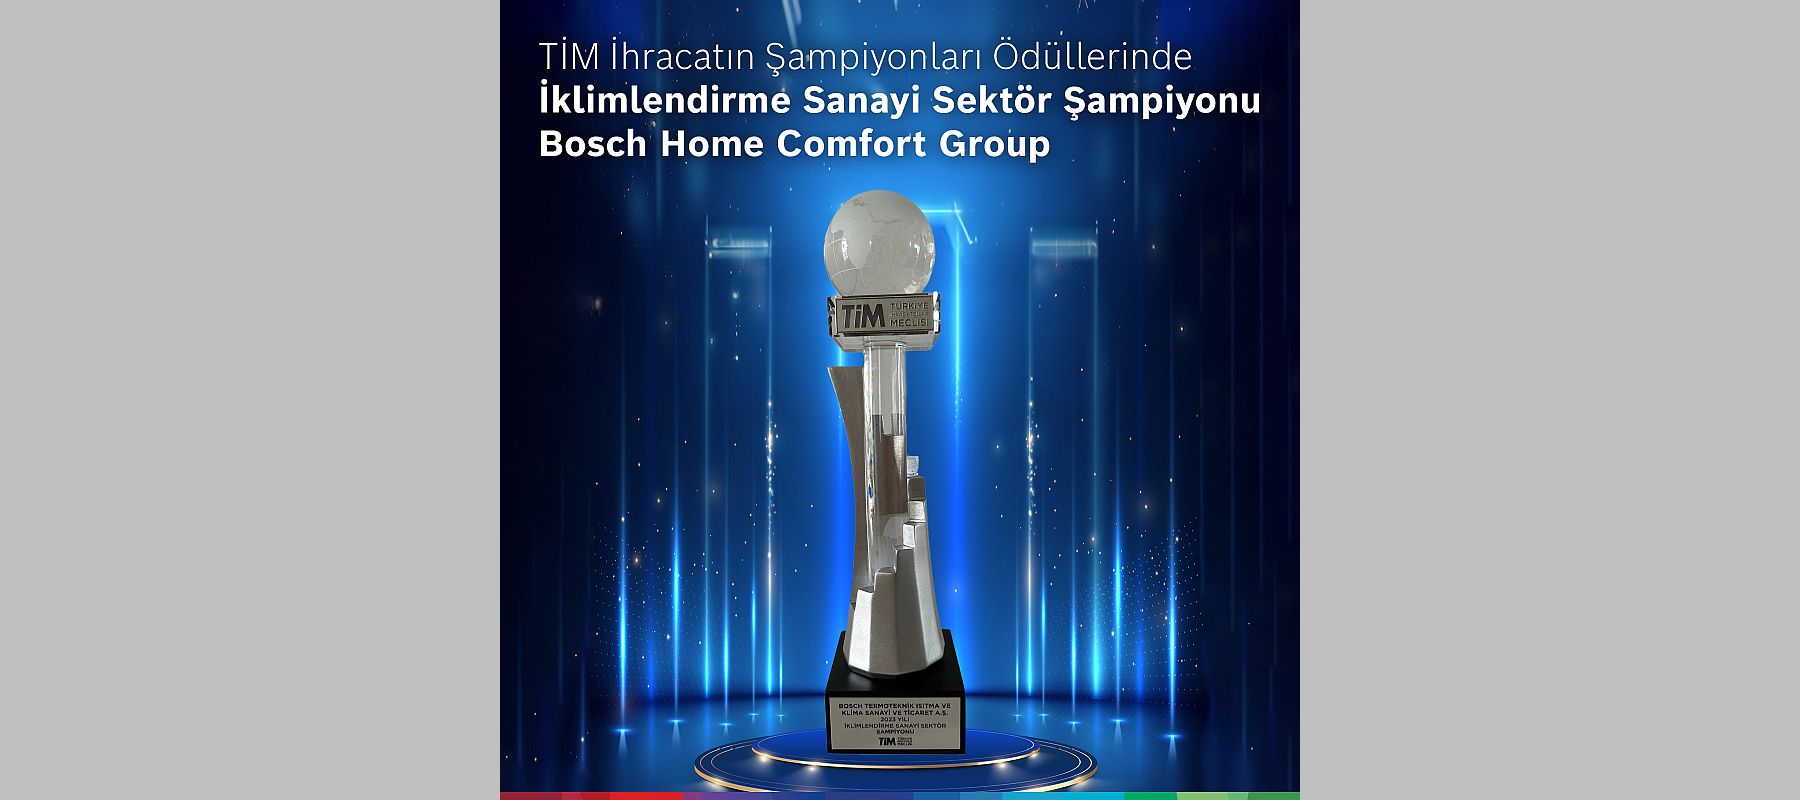 Bosch Home Comfort Group iklimlendirme sektöründe ihracat şampiyonu